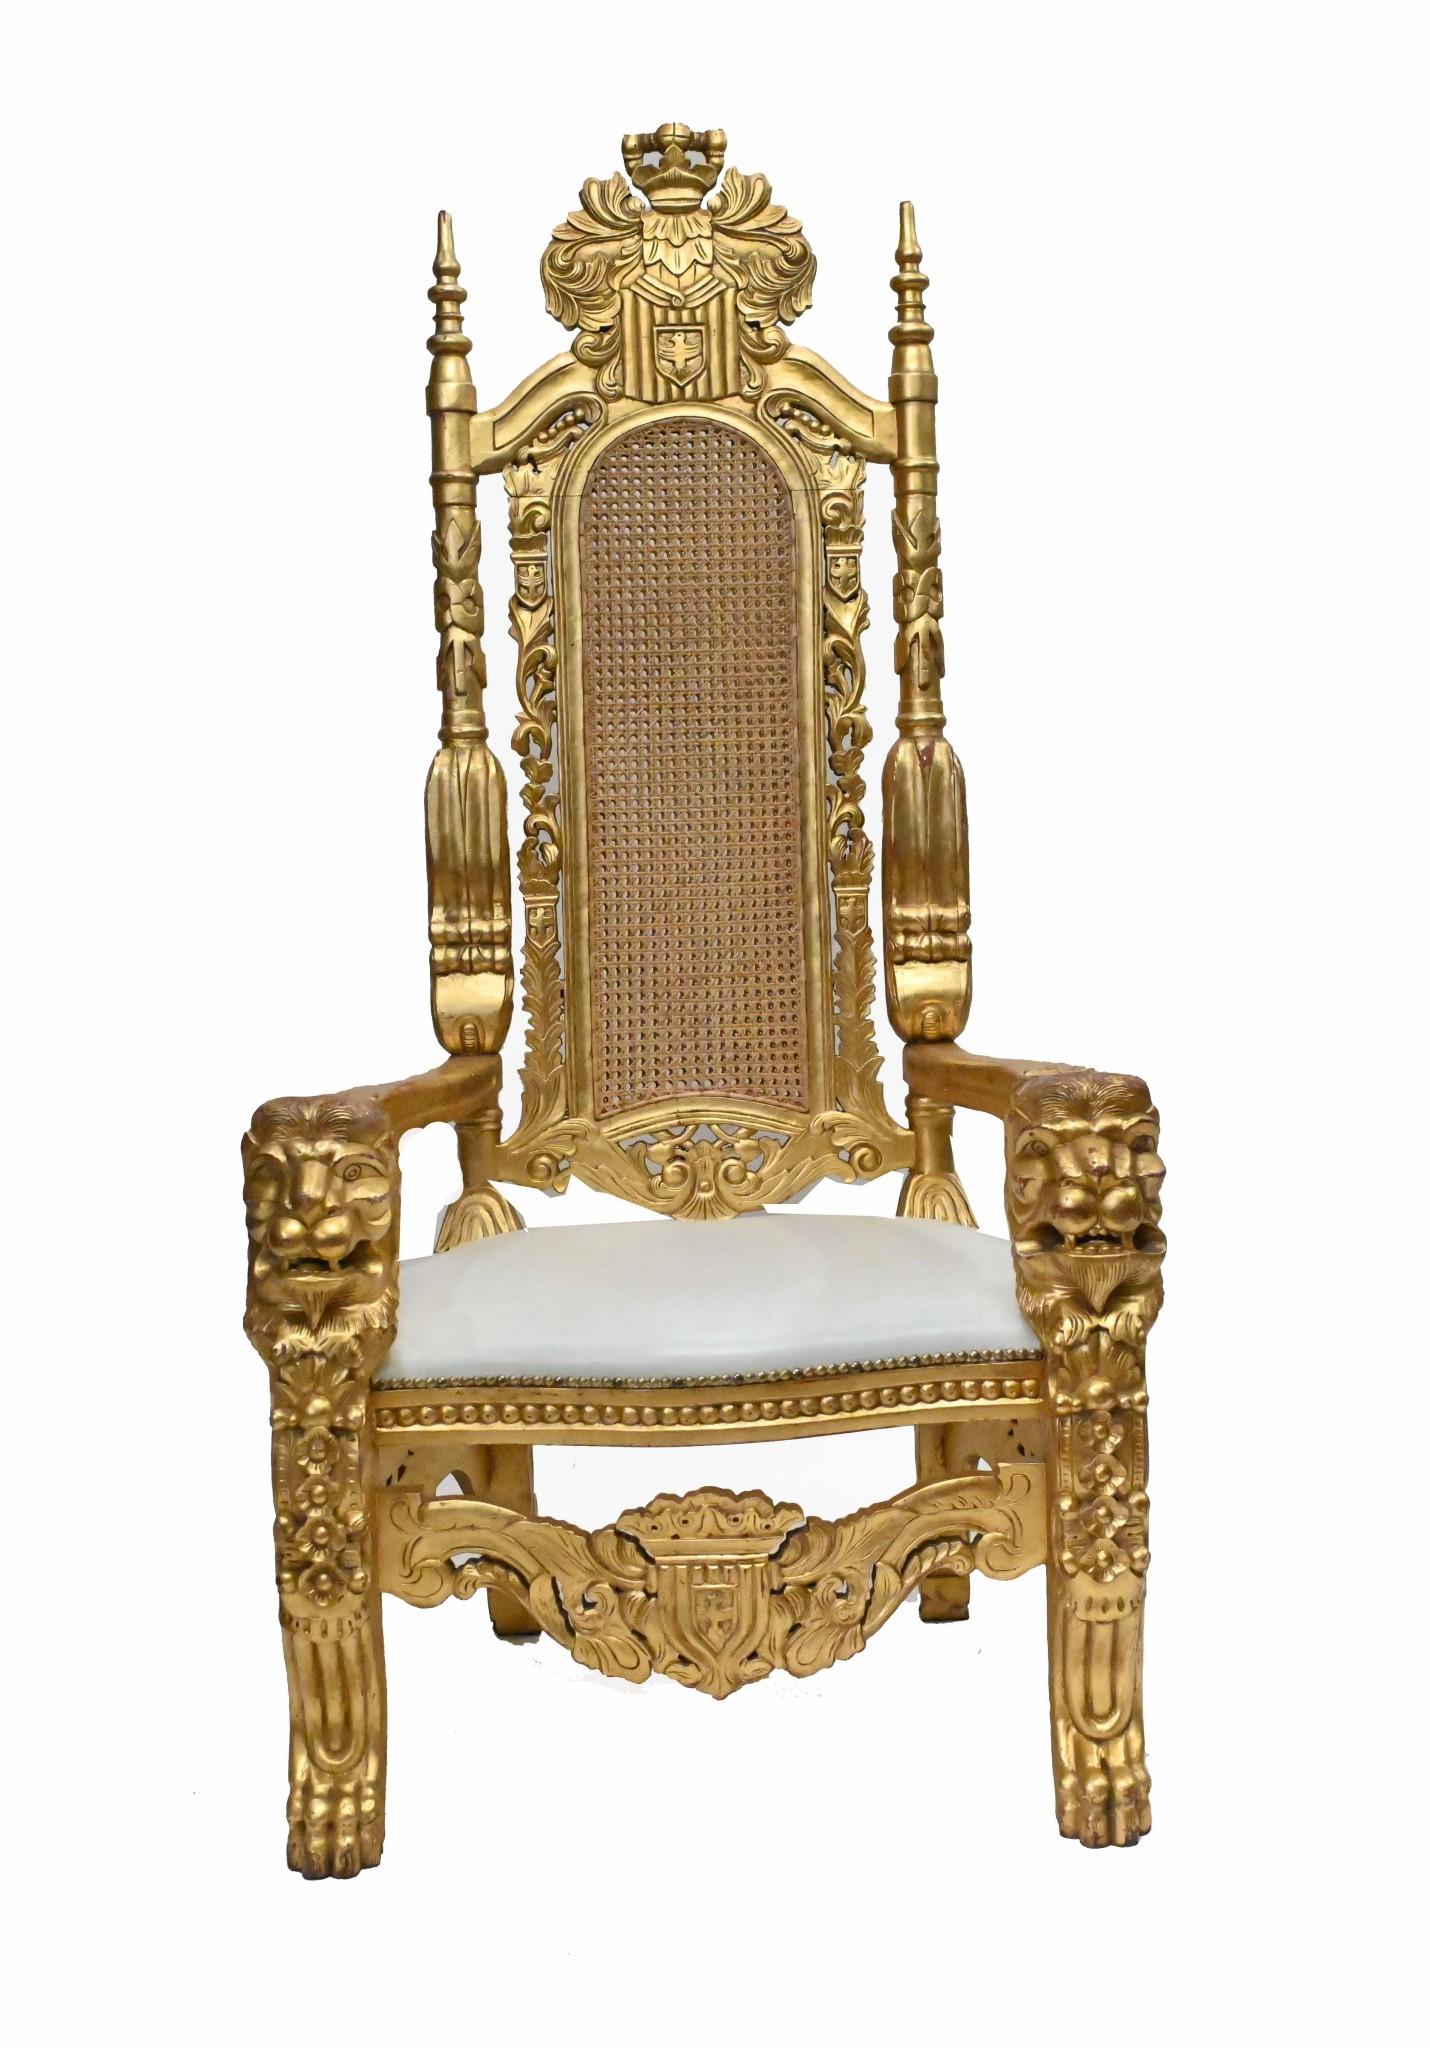 Plus bling-bling qu'une série Made In Chelsea, il s'agit d'une paire de grands trônes dorés.
Sculptée à la main avec des têtes de lions distinctives pour les bras.
Le haut du dossier élaboré mesure presque deux mètres de haut - 175 cm - ce qui lui